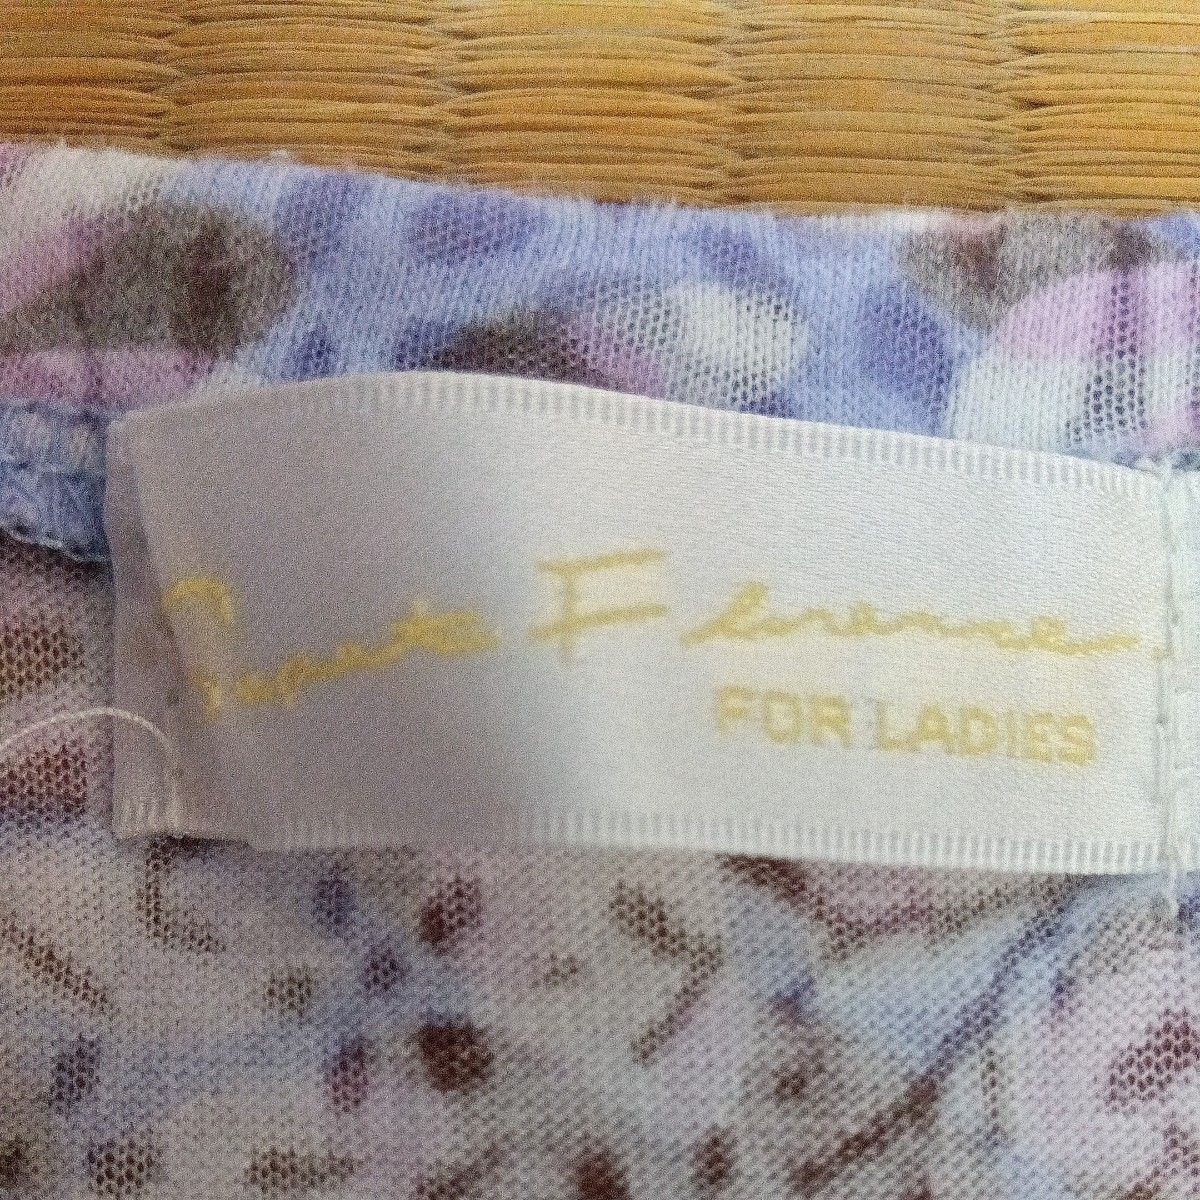 レディース夏物 半袖カットソー 薄紫 日本製